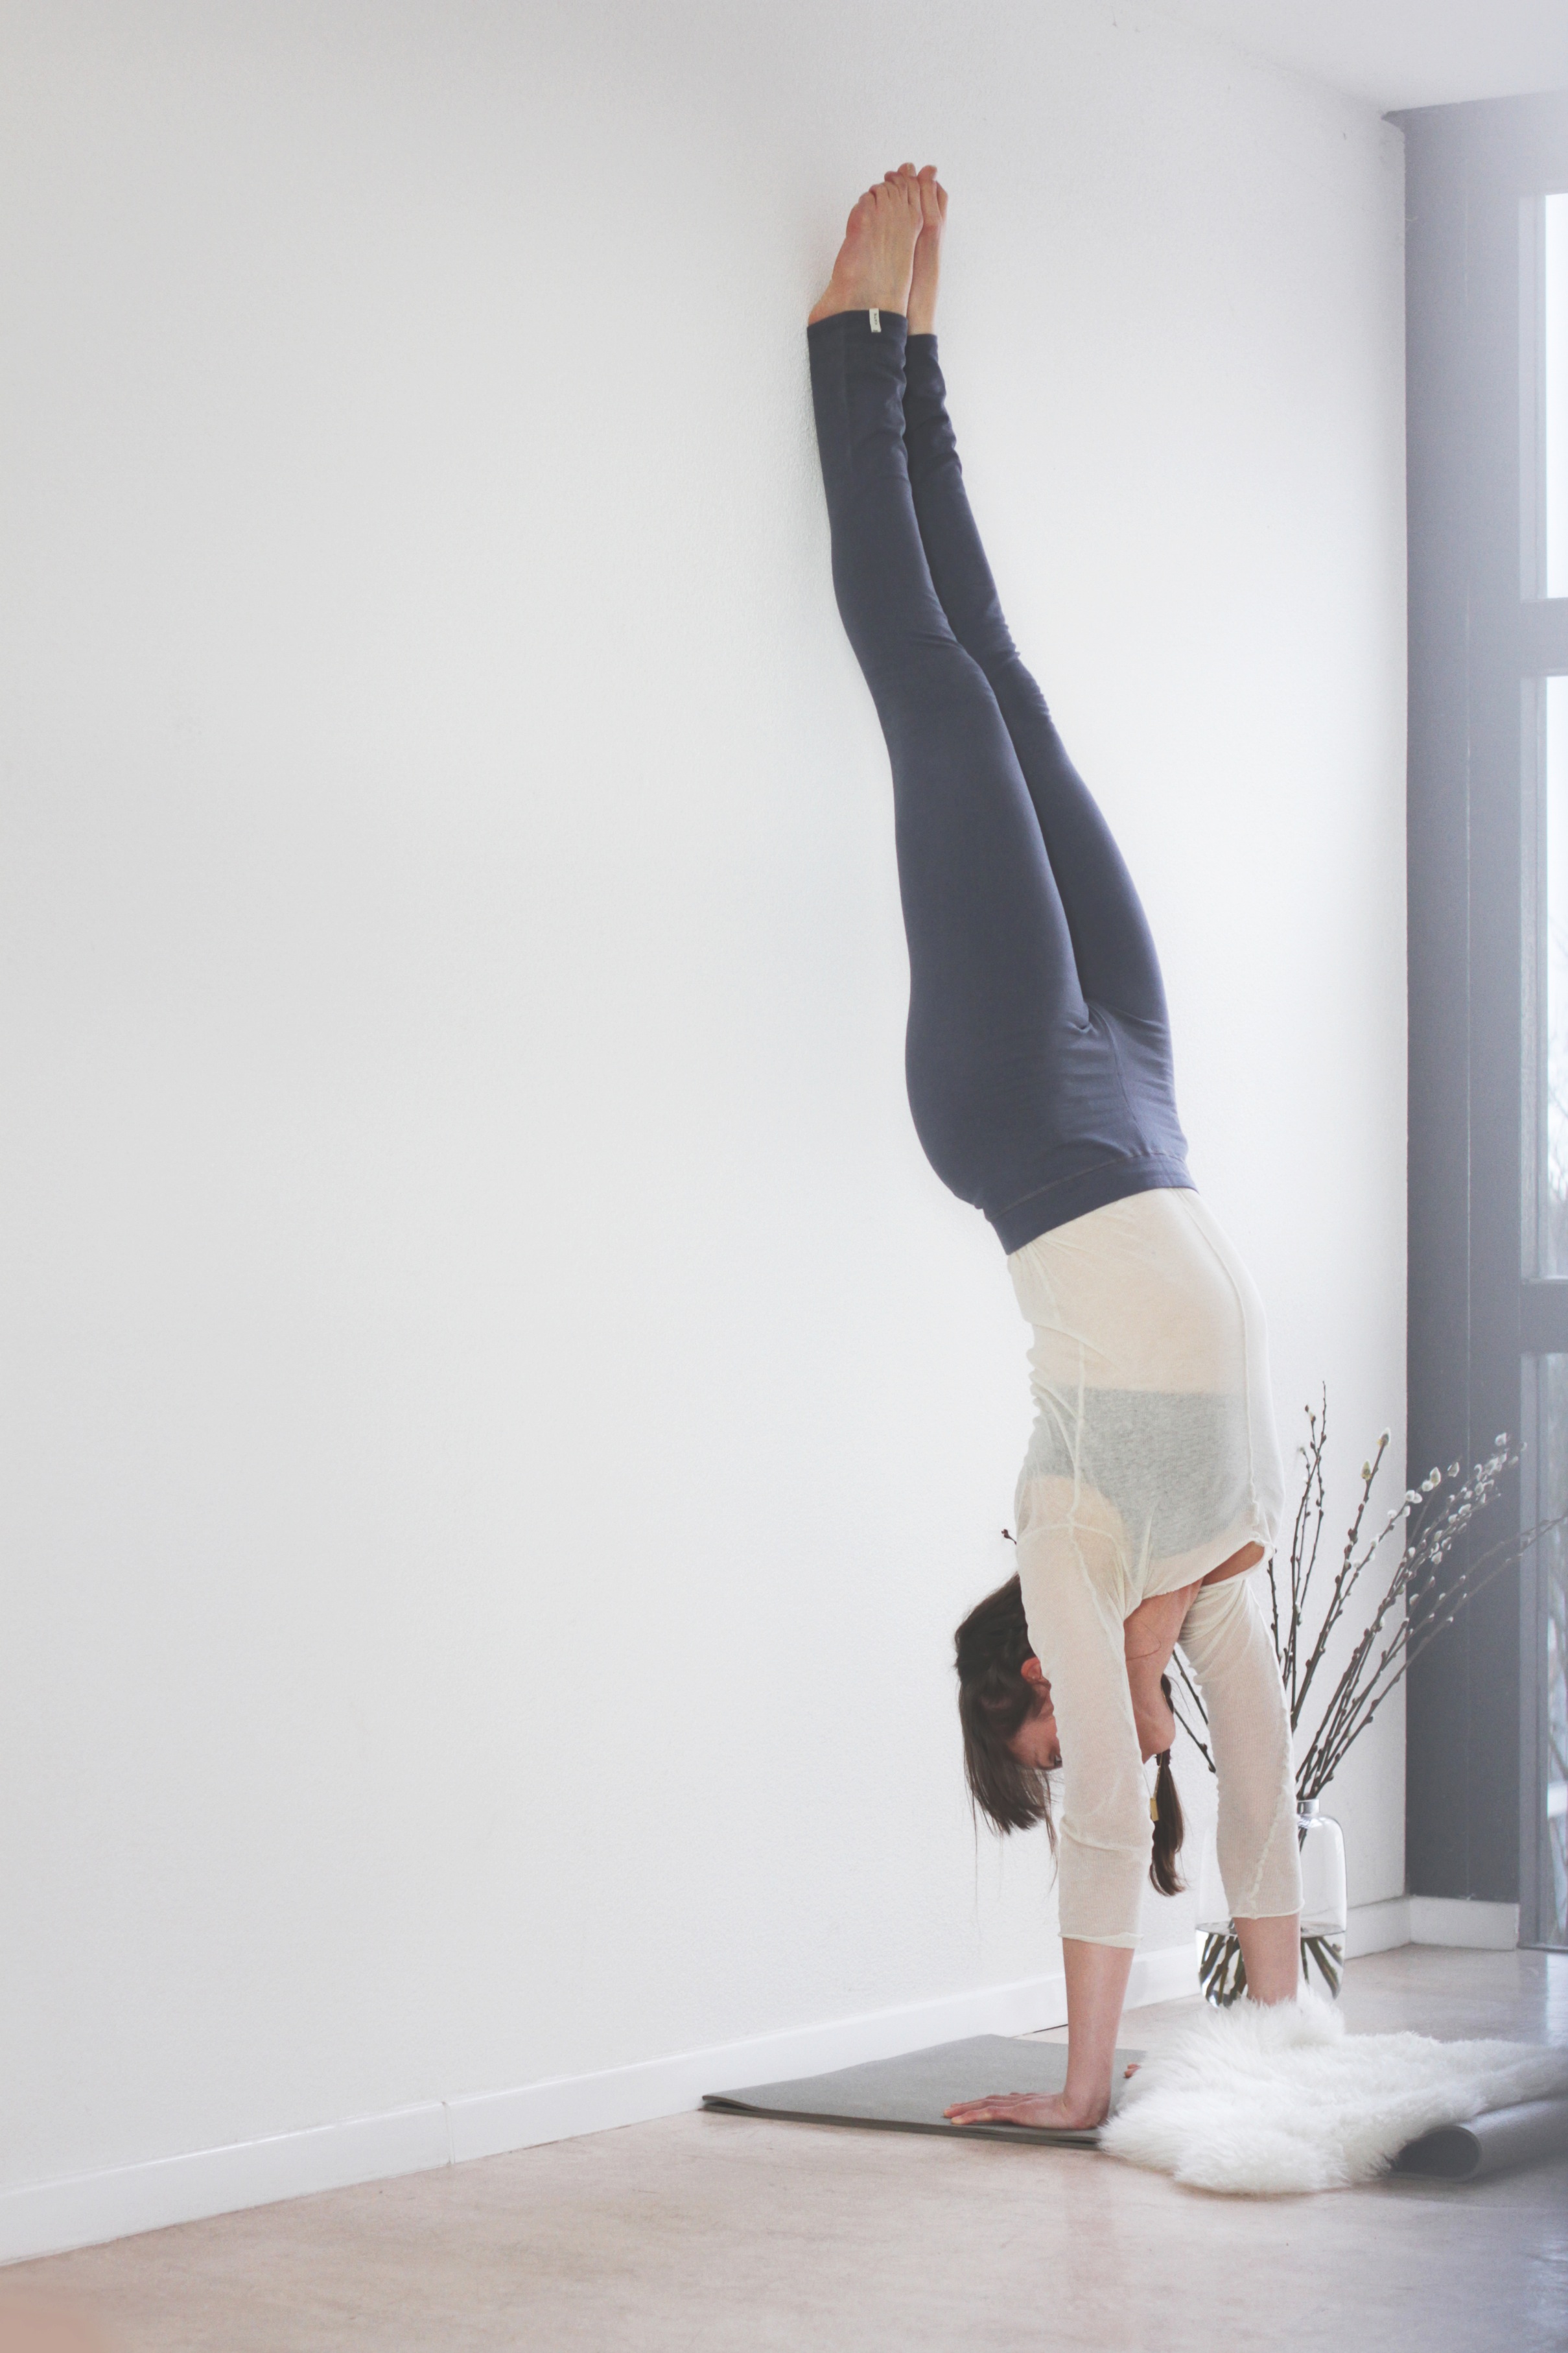 Kyra | spring yoga poses